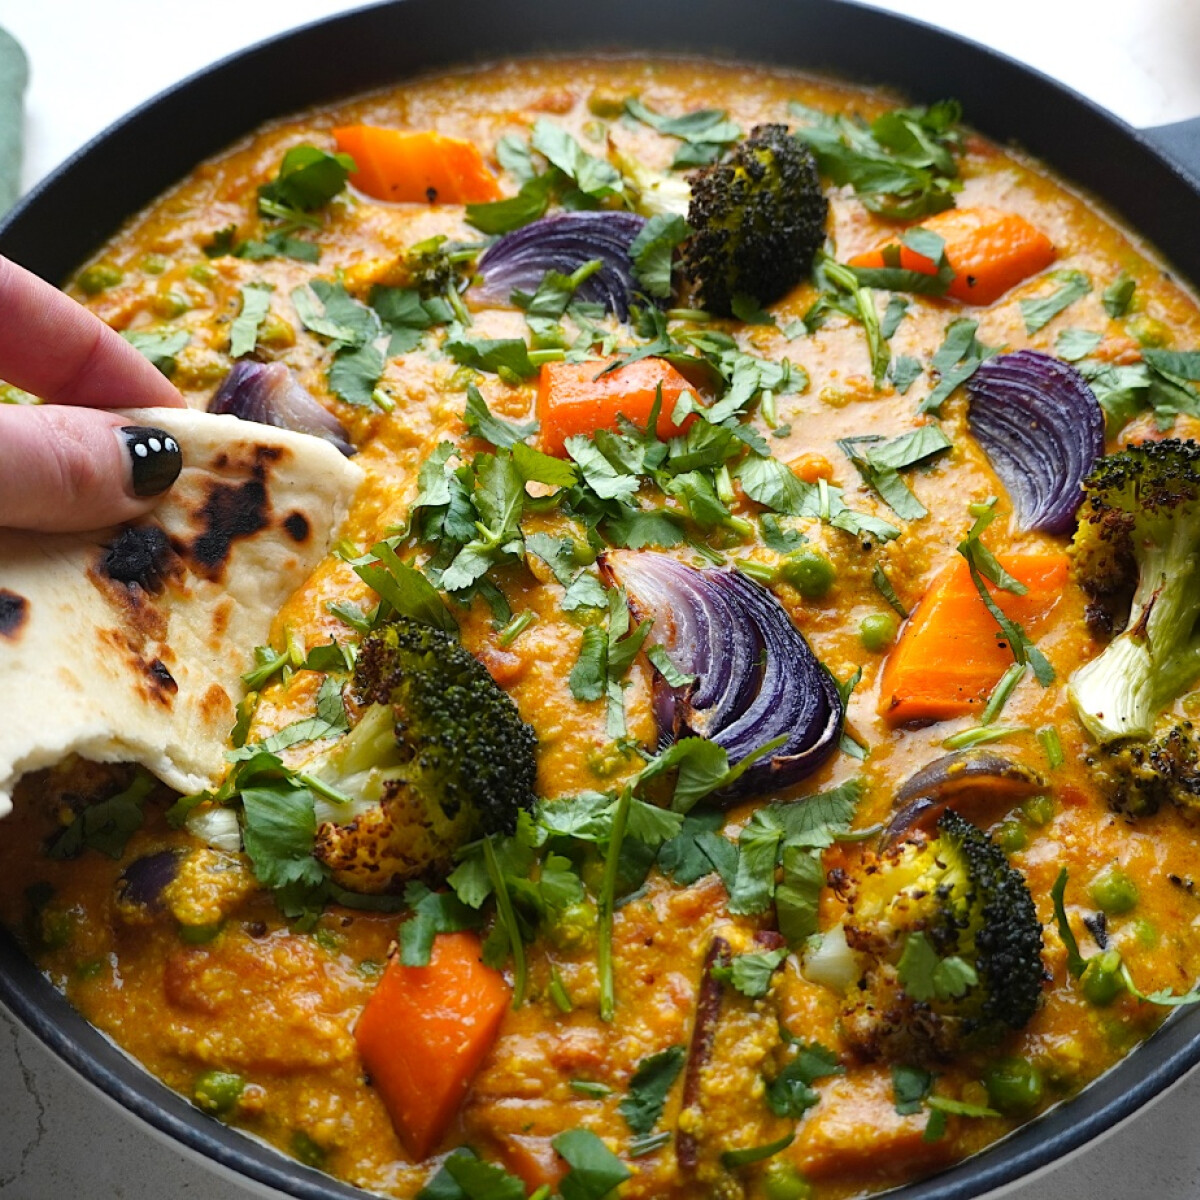 Íme a gyors, sokzöldséges curry, ami szinte elkészíti saját magát